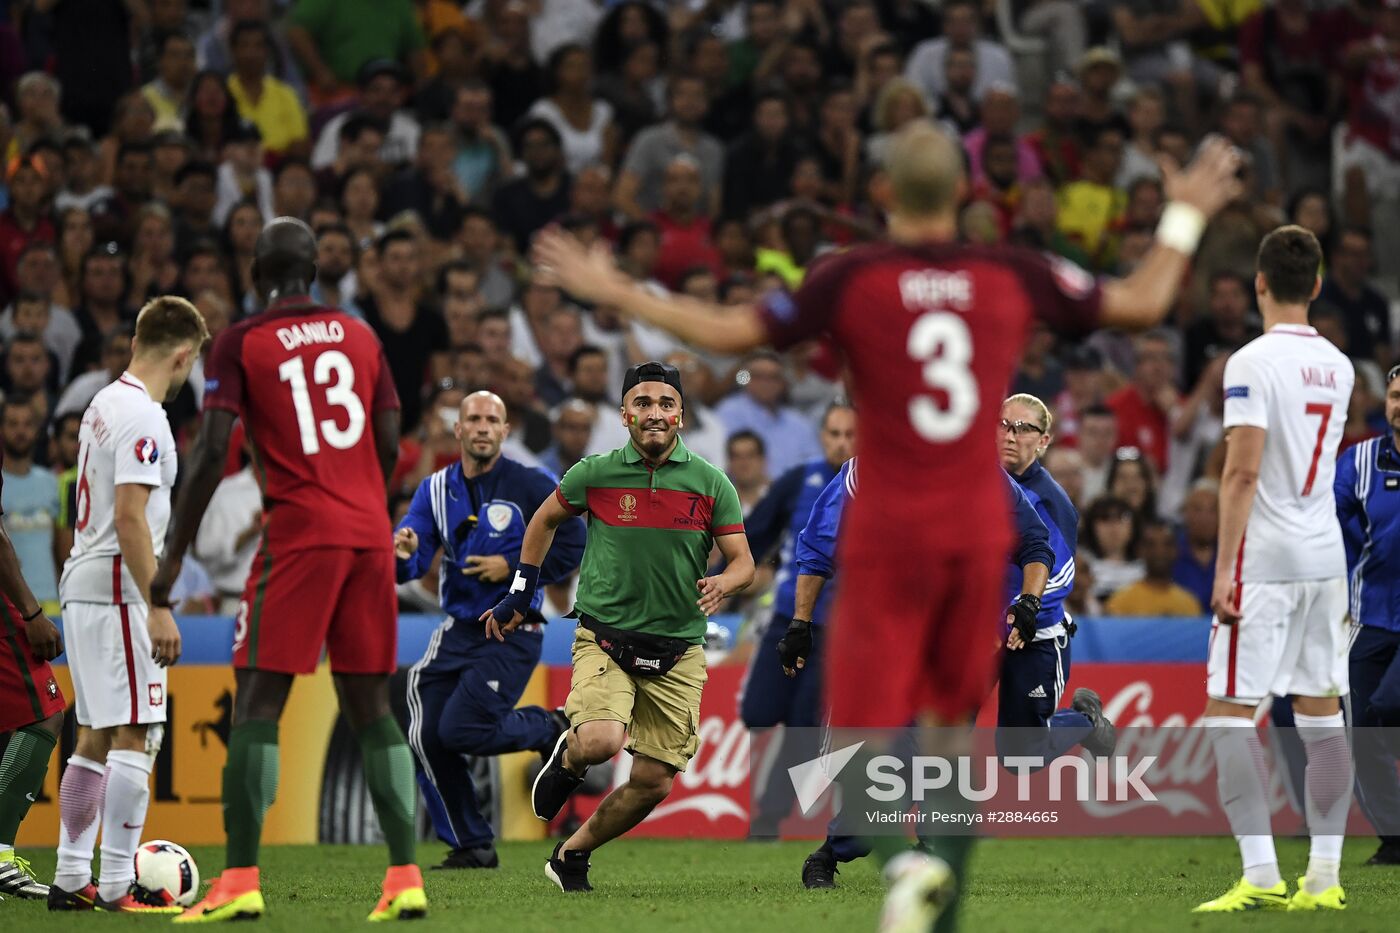 UEFA Euro 2016. Poland vs. Portugal